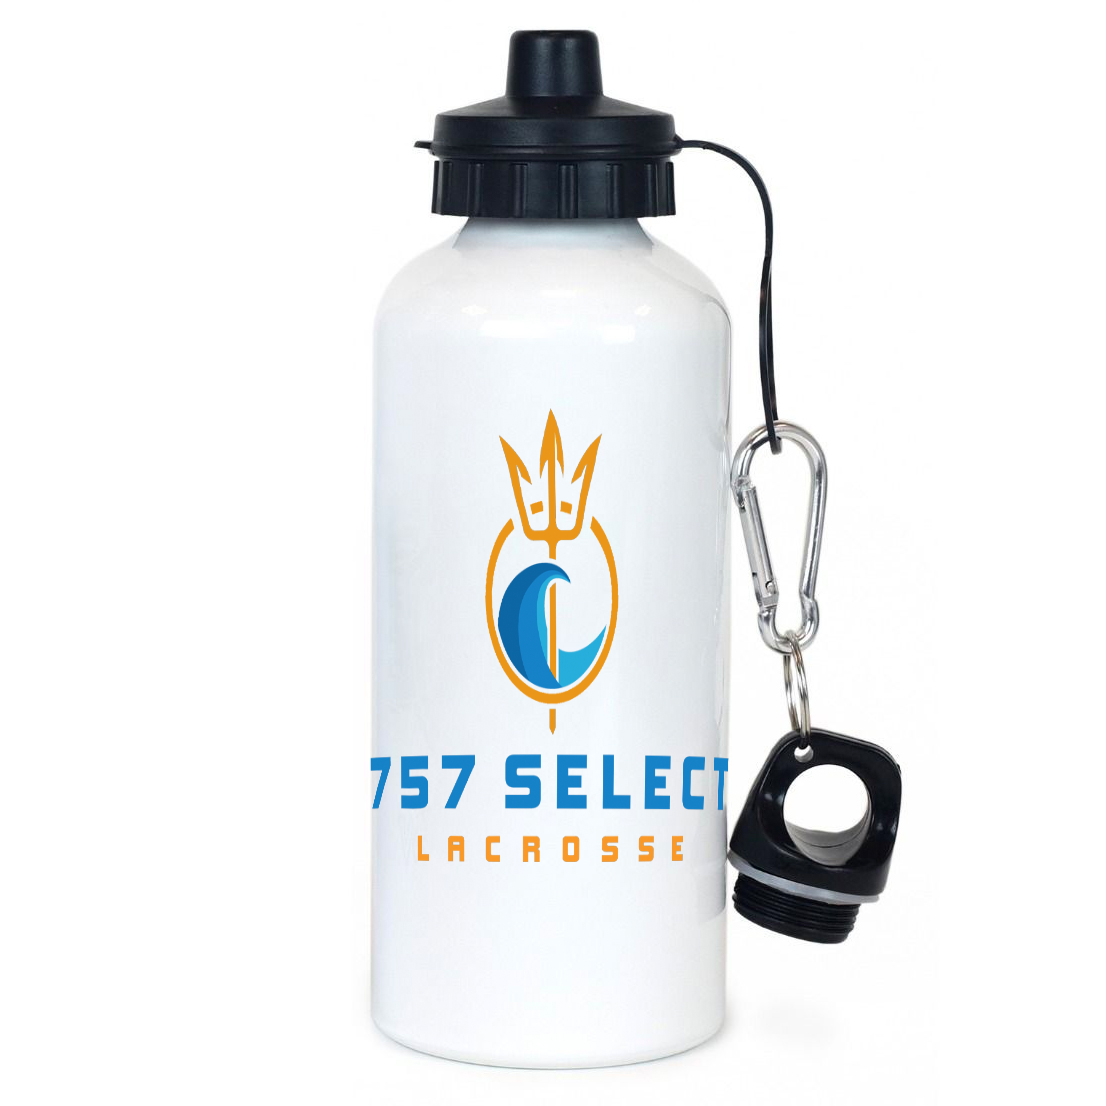 757 Lacrosse Team Water Bottle